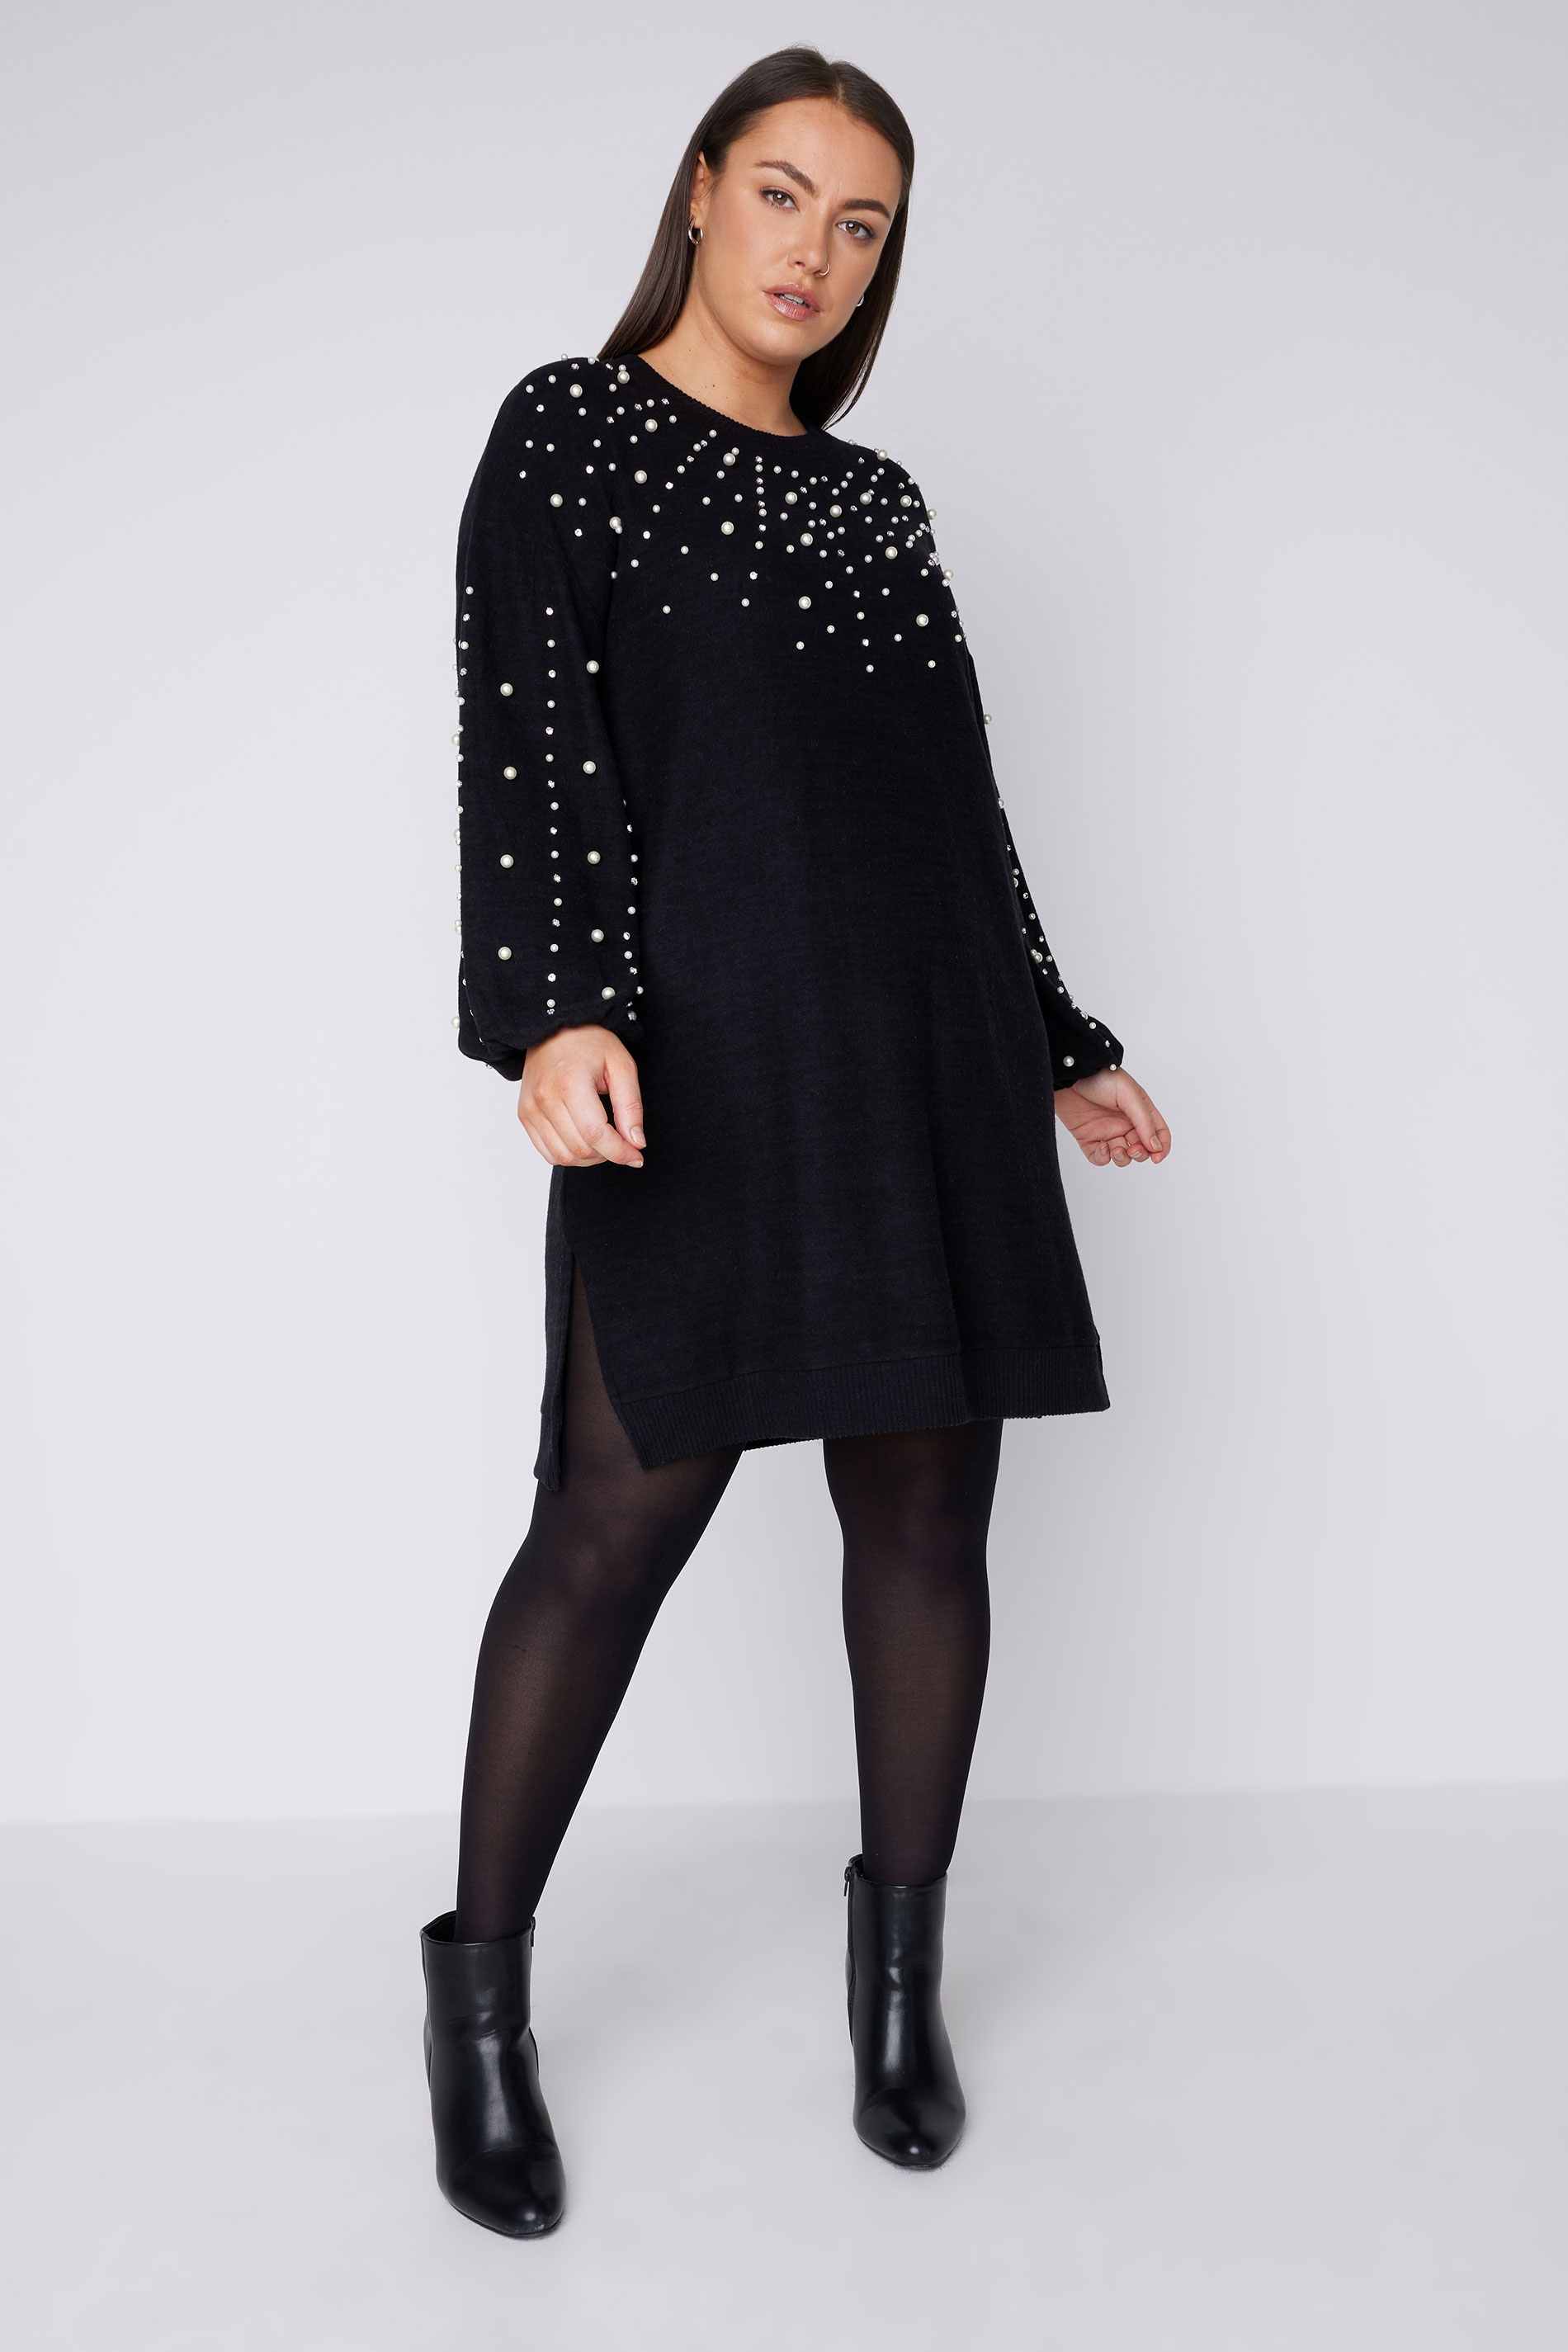 EVANS Plus Size Black Pearl Embellished Jumper Dress | Evans 1